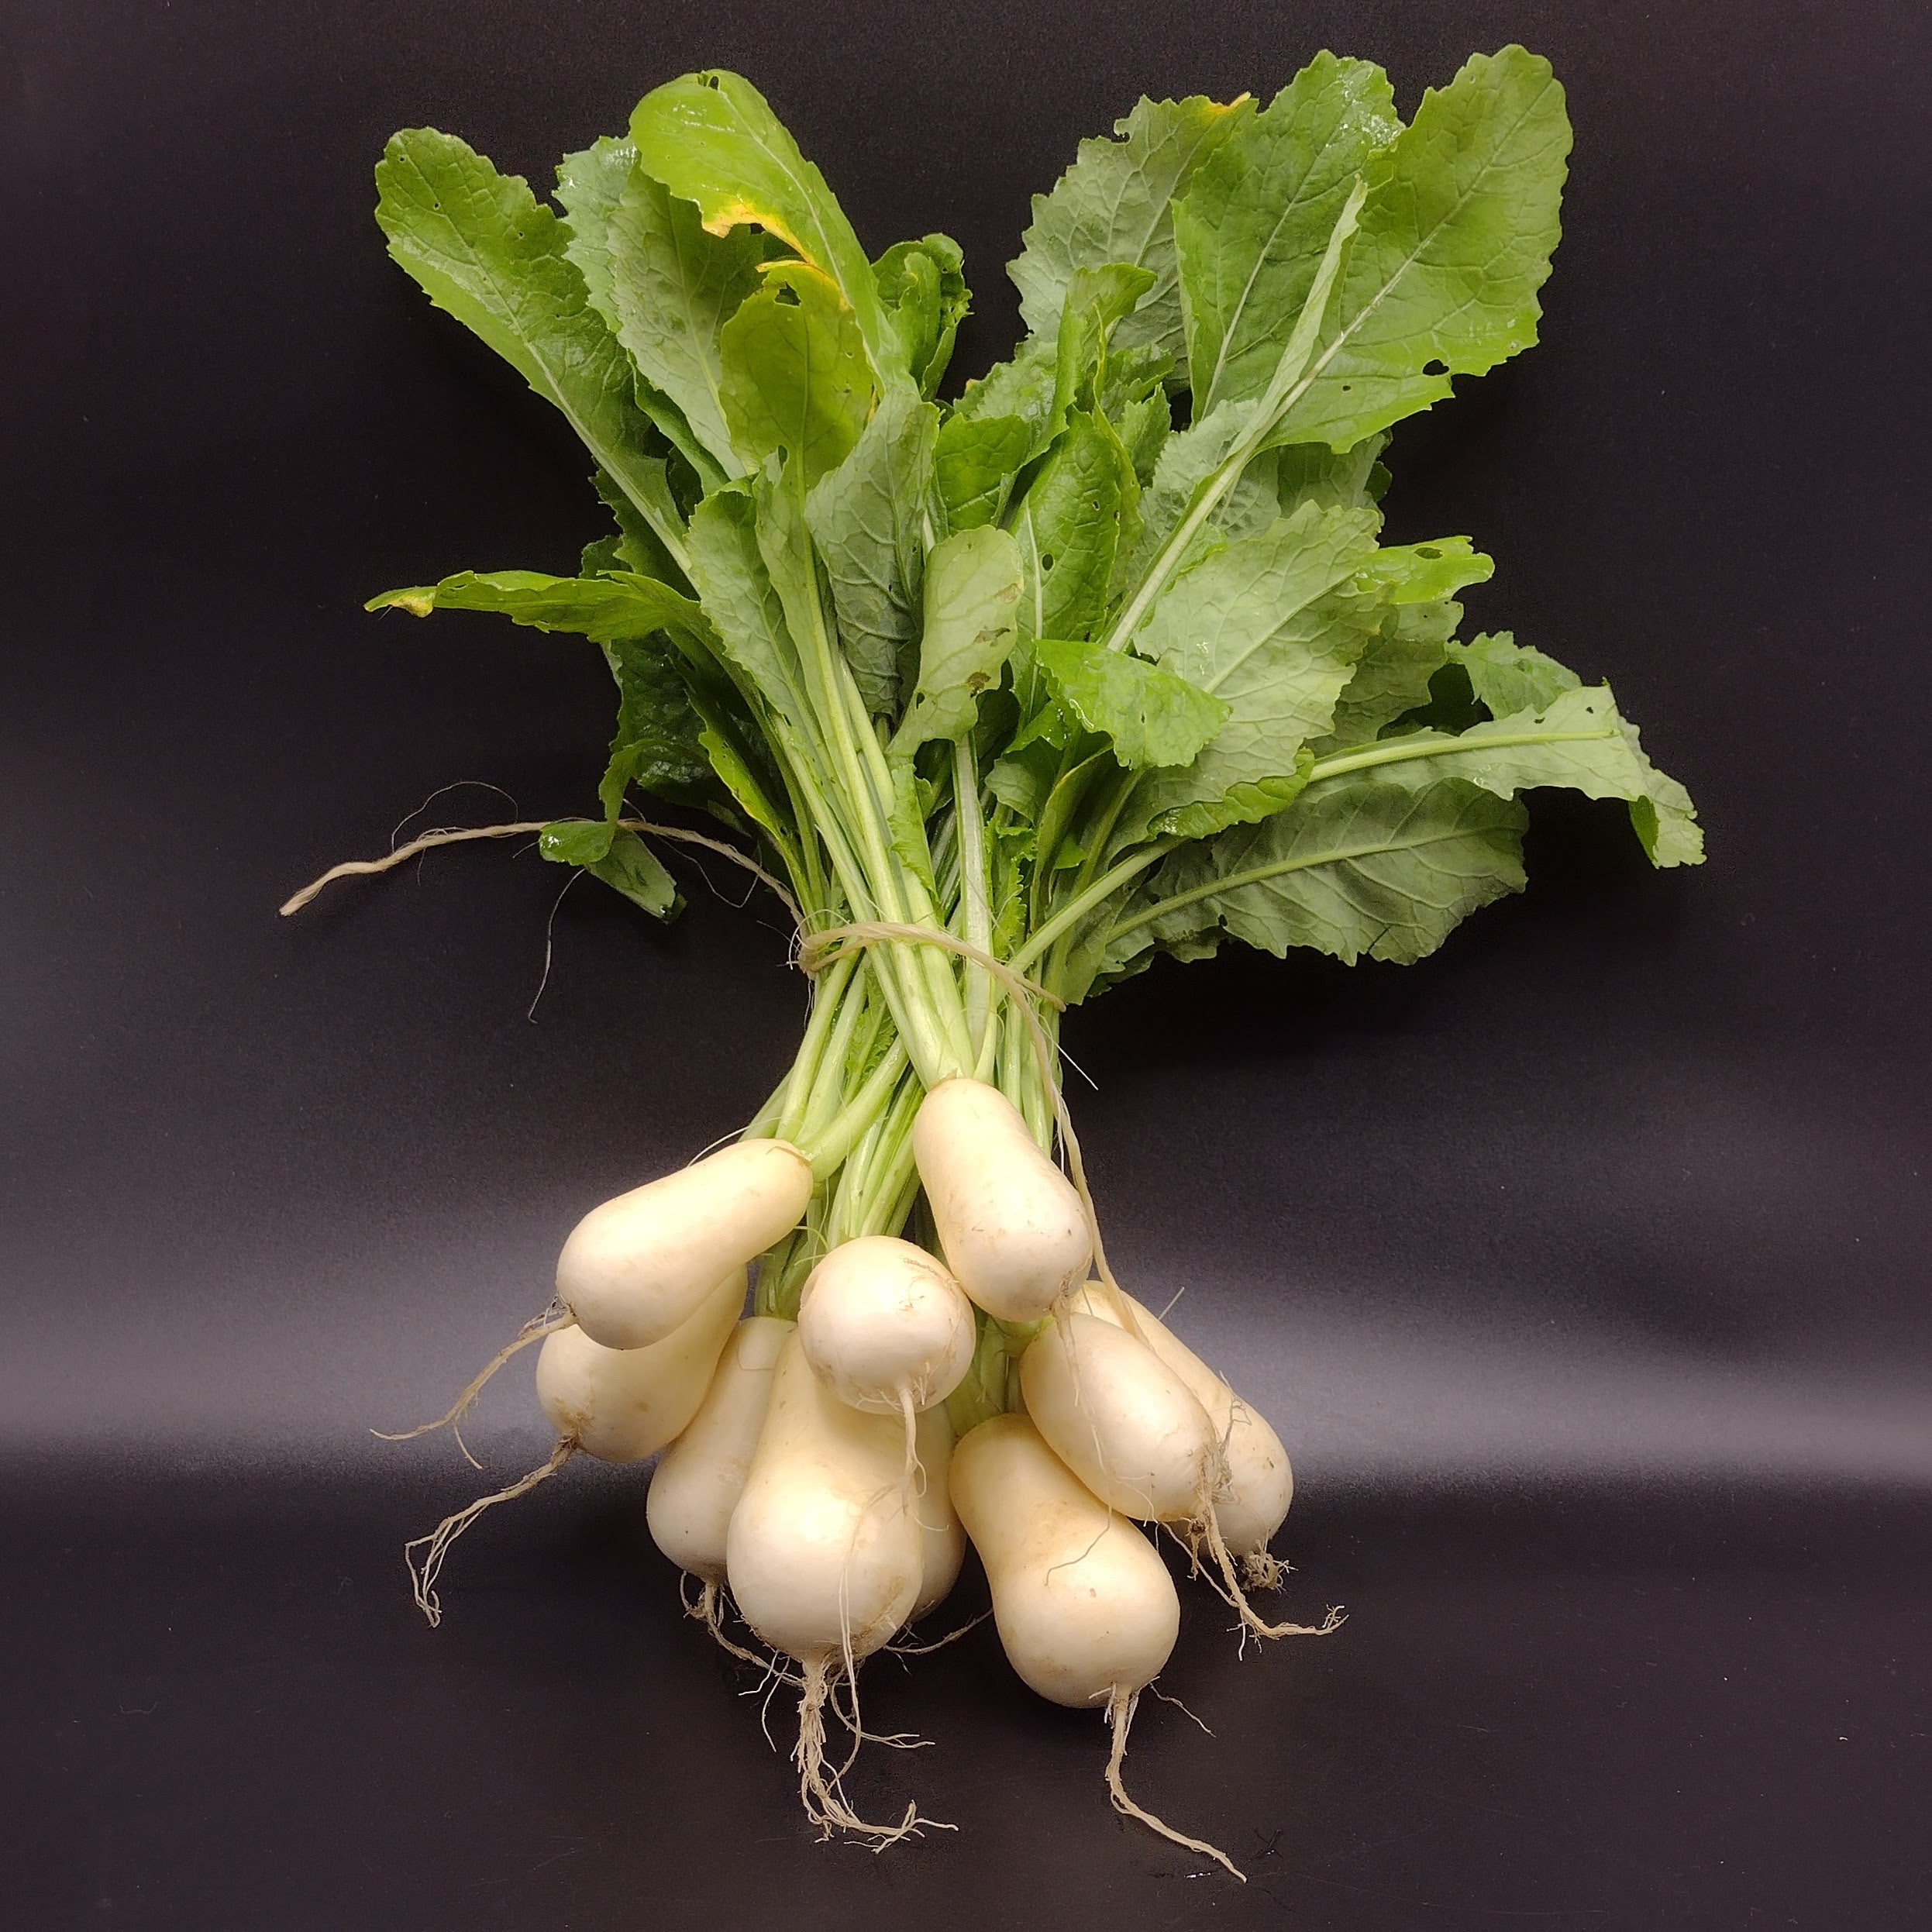 Turnips, Hakurei (1 bunch)